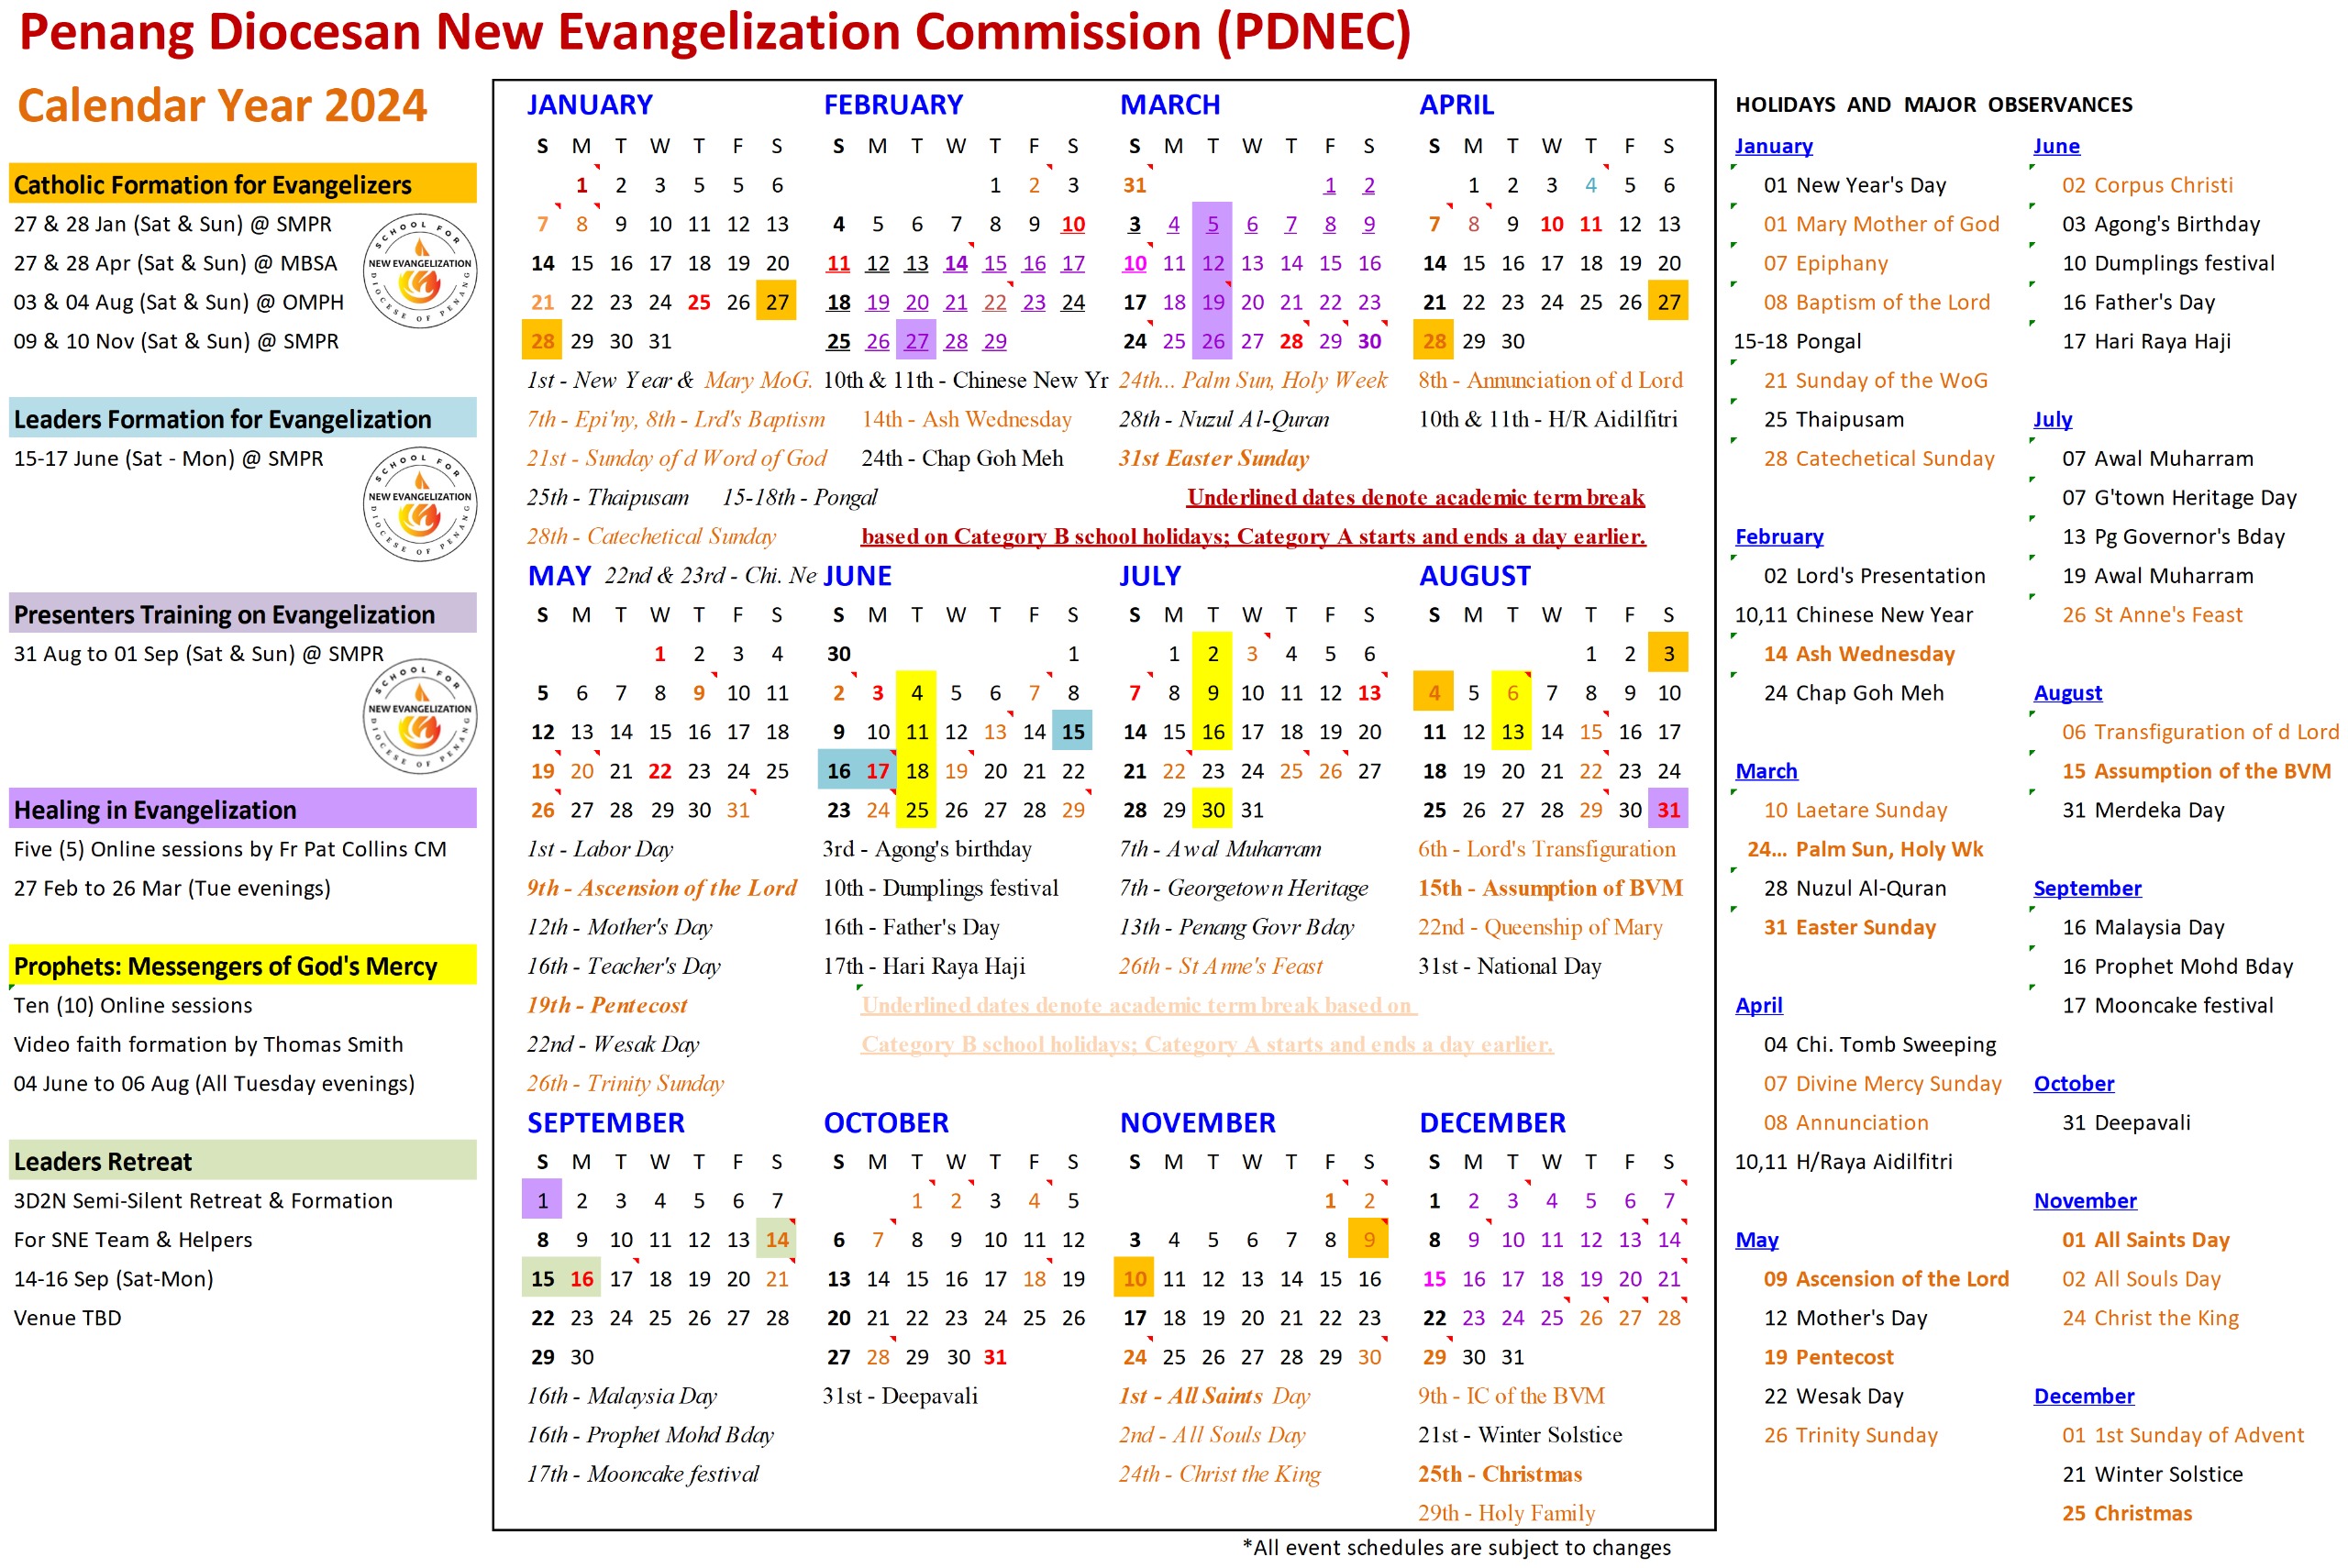 PDNEC_Calendar2024